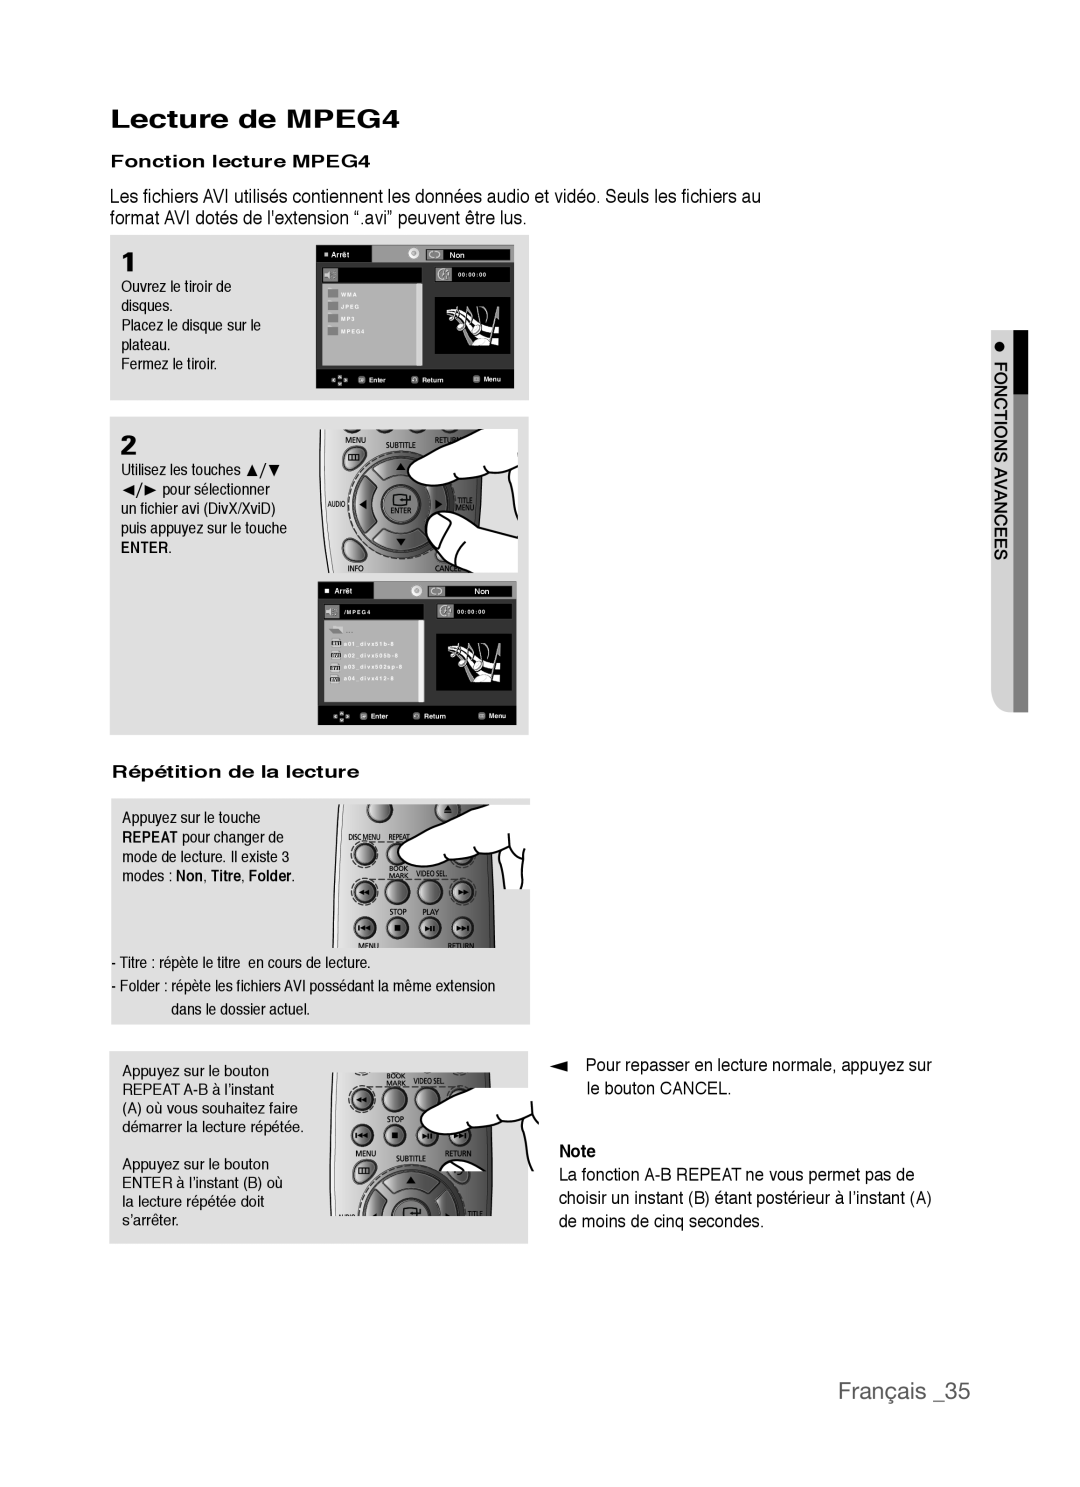 Samsung AK68-01770G Lecture de MPEG4, Français, Fonction lecture MPEG4, Répétition de la lecture, le bouton CANCEL, Enter 